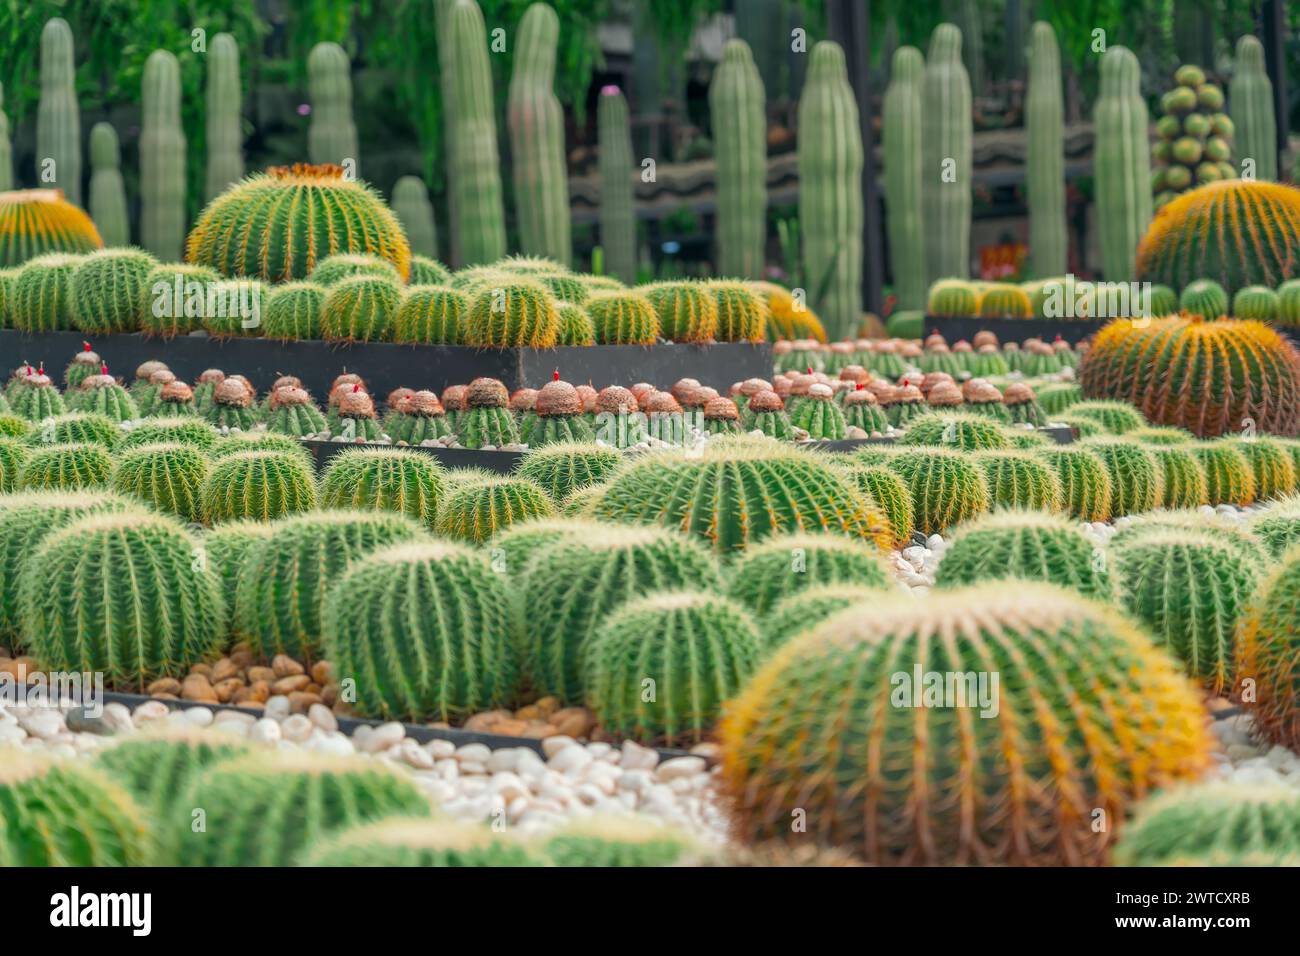 Grande variété de cactus echinocactus grusonii, Melocactus, dans le jardin climat aride. Banque D'Images